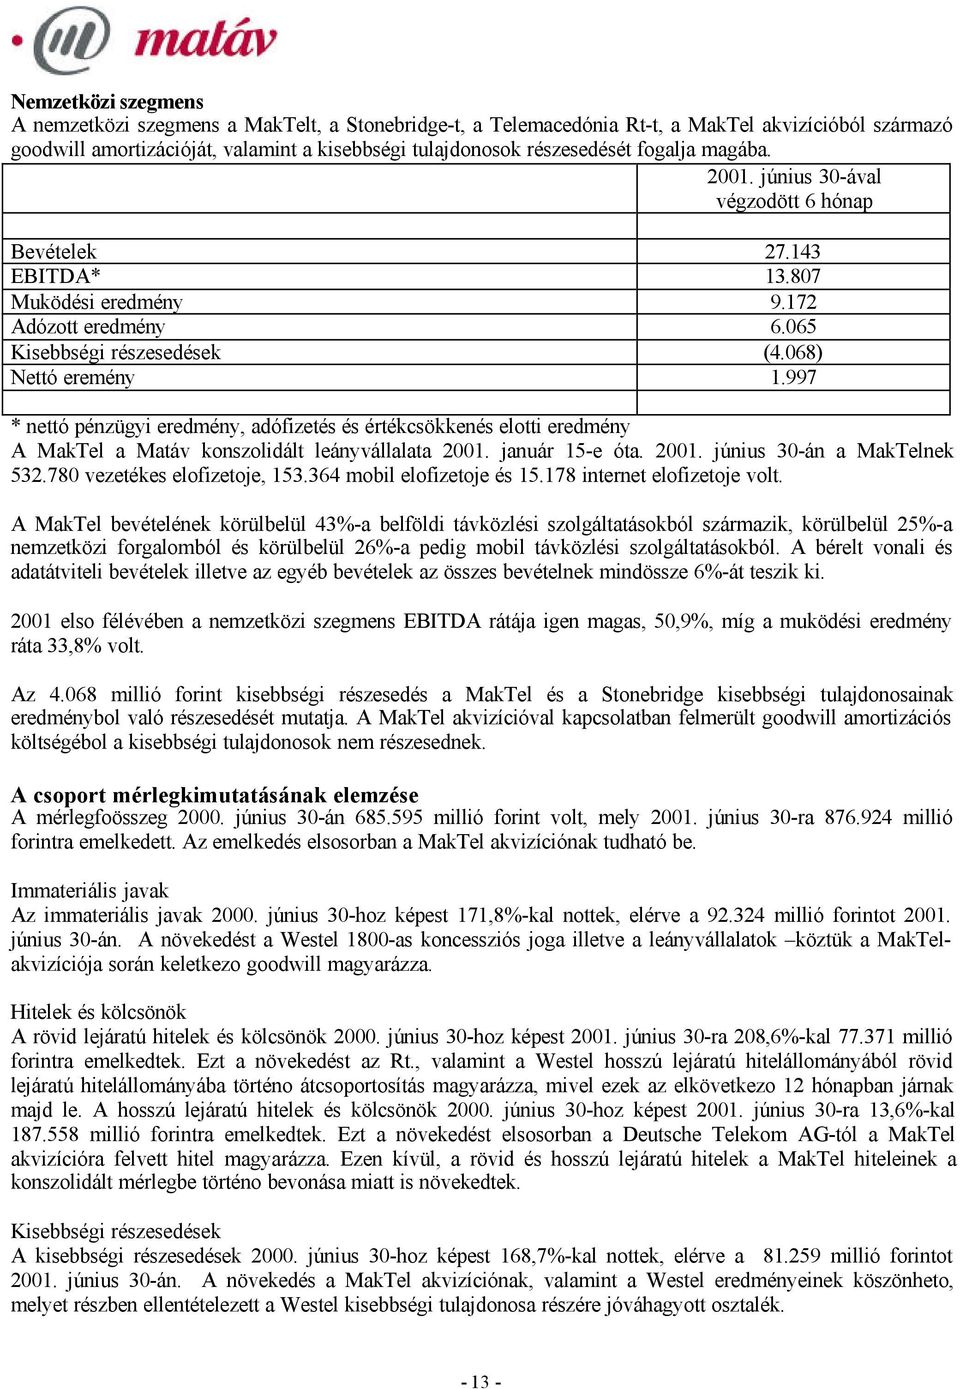 997 * nettó pénzügyi eredmény, adófizetés és értékcsökkenés elotti eredmény A MakTel a Matáv konszolidált leányvállalata 2001. január 15-e óta. 2001. június 30-án a MakTelnek 532.